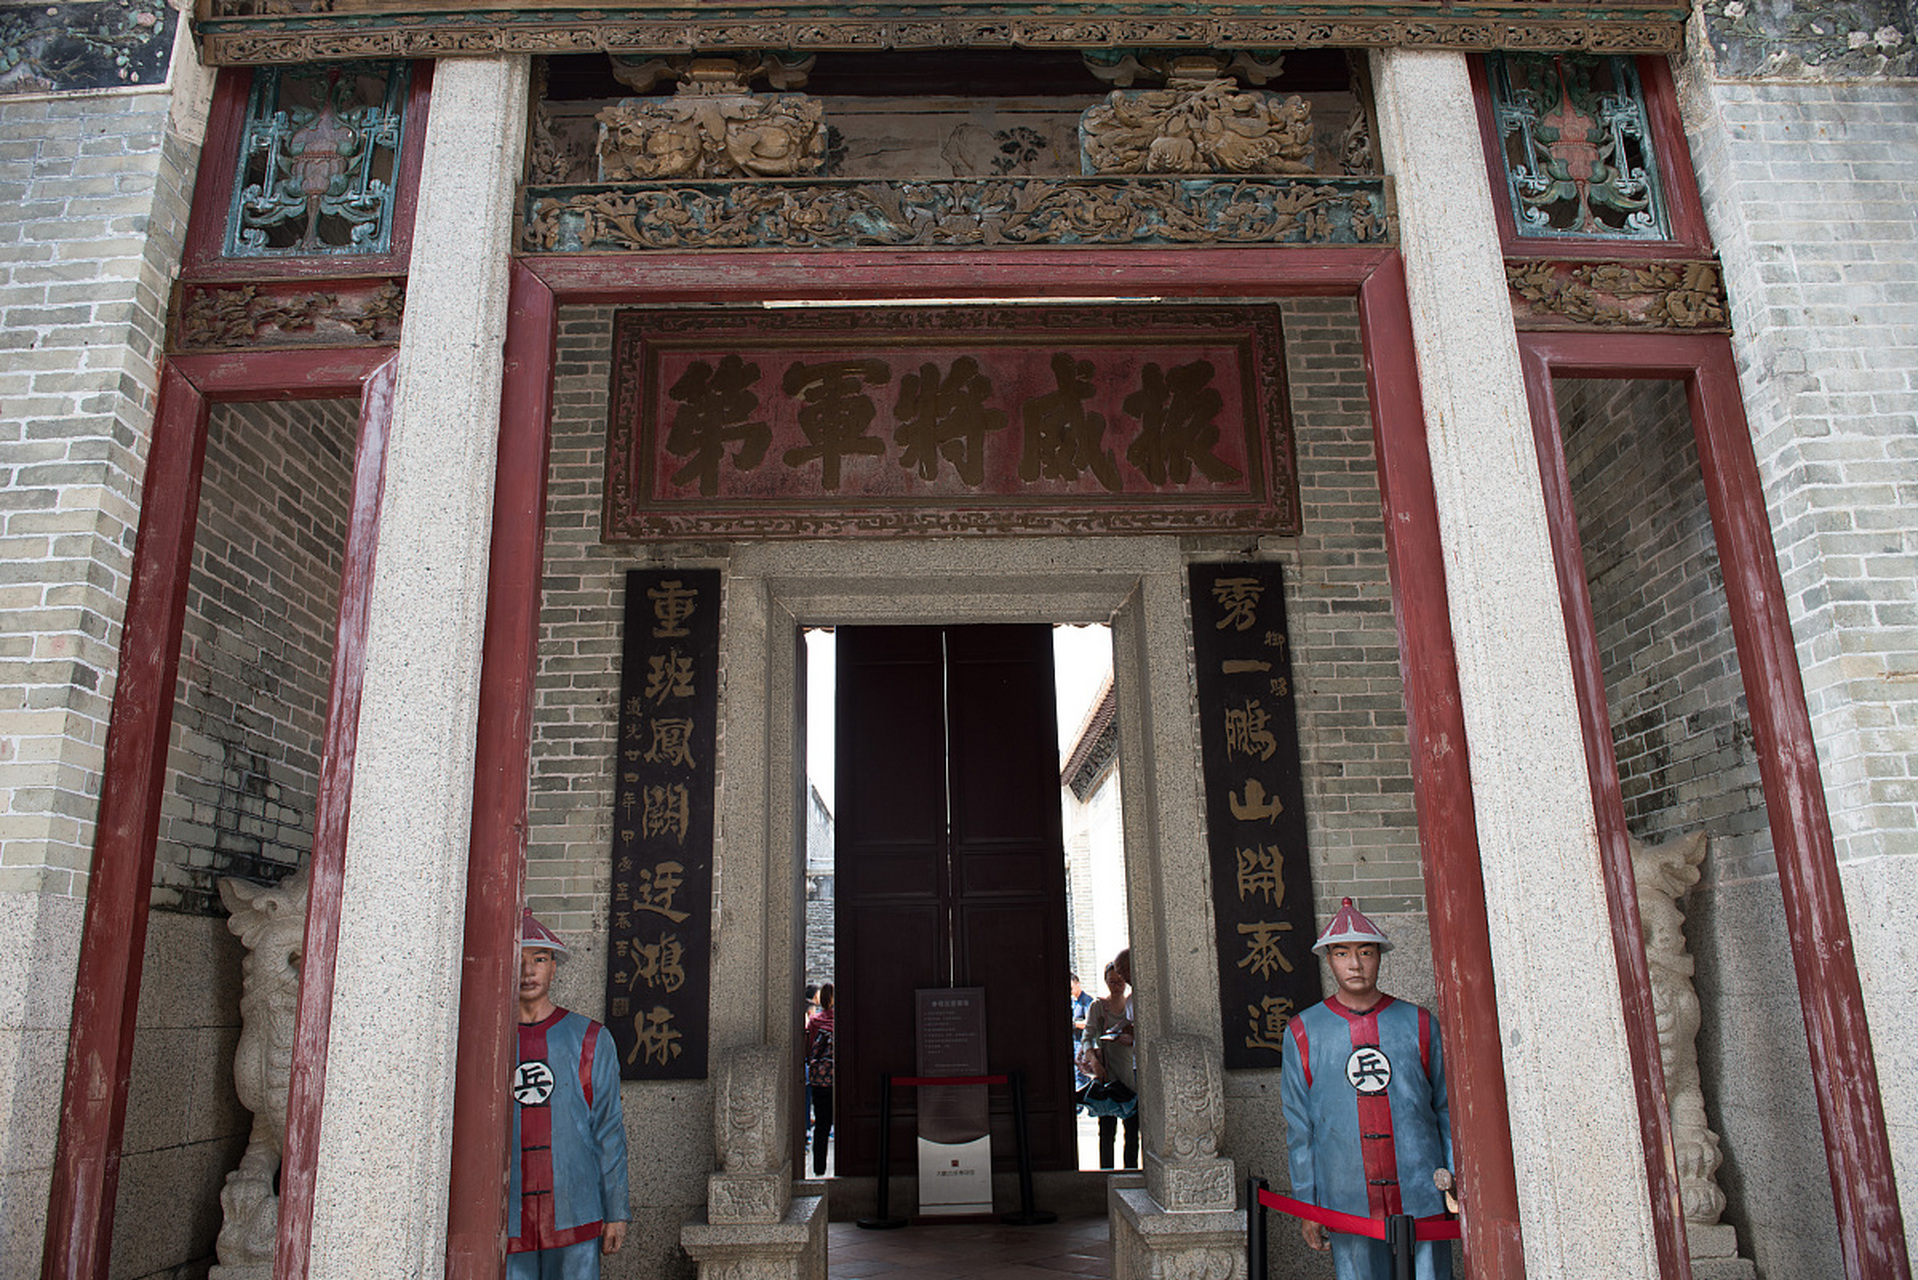 在广州市番禺区小谷围街道,有一座古老而庄重的祠堂,它的名字叫北亭